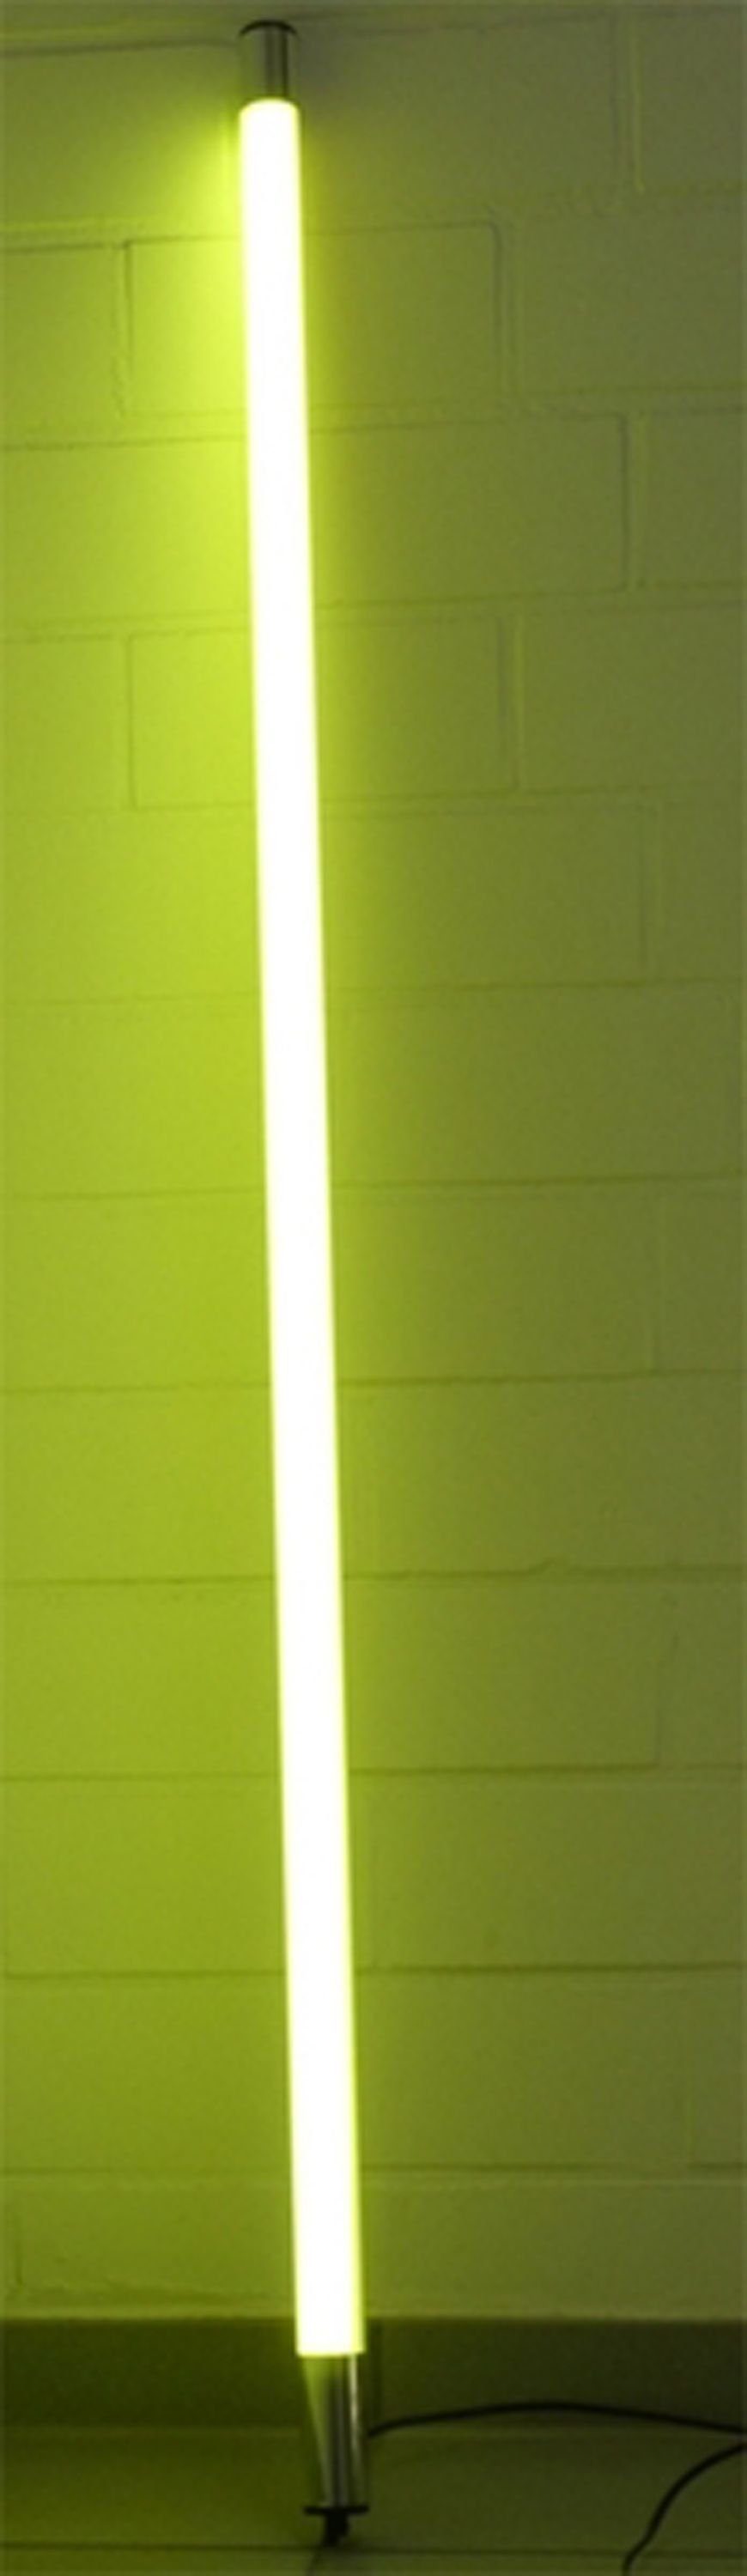 XENON LED Wandleuchte LED Leuchtstab Satiniert 0,63m Länge 800 Lumen IP44 für Außen Gelb, LED Röhre T8, Xenon